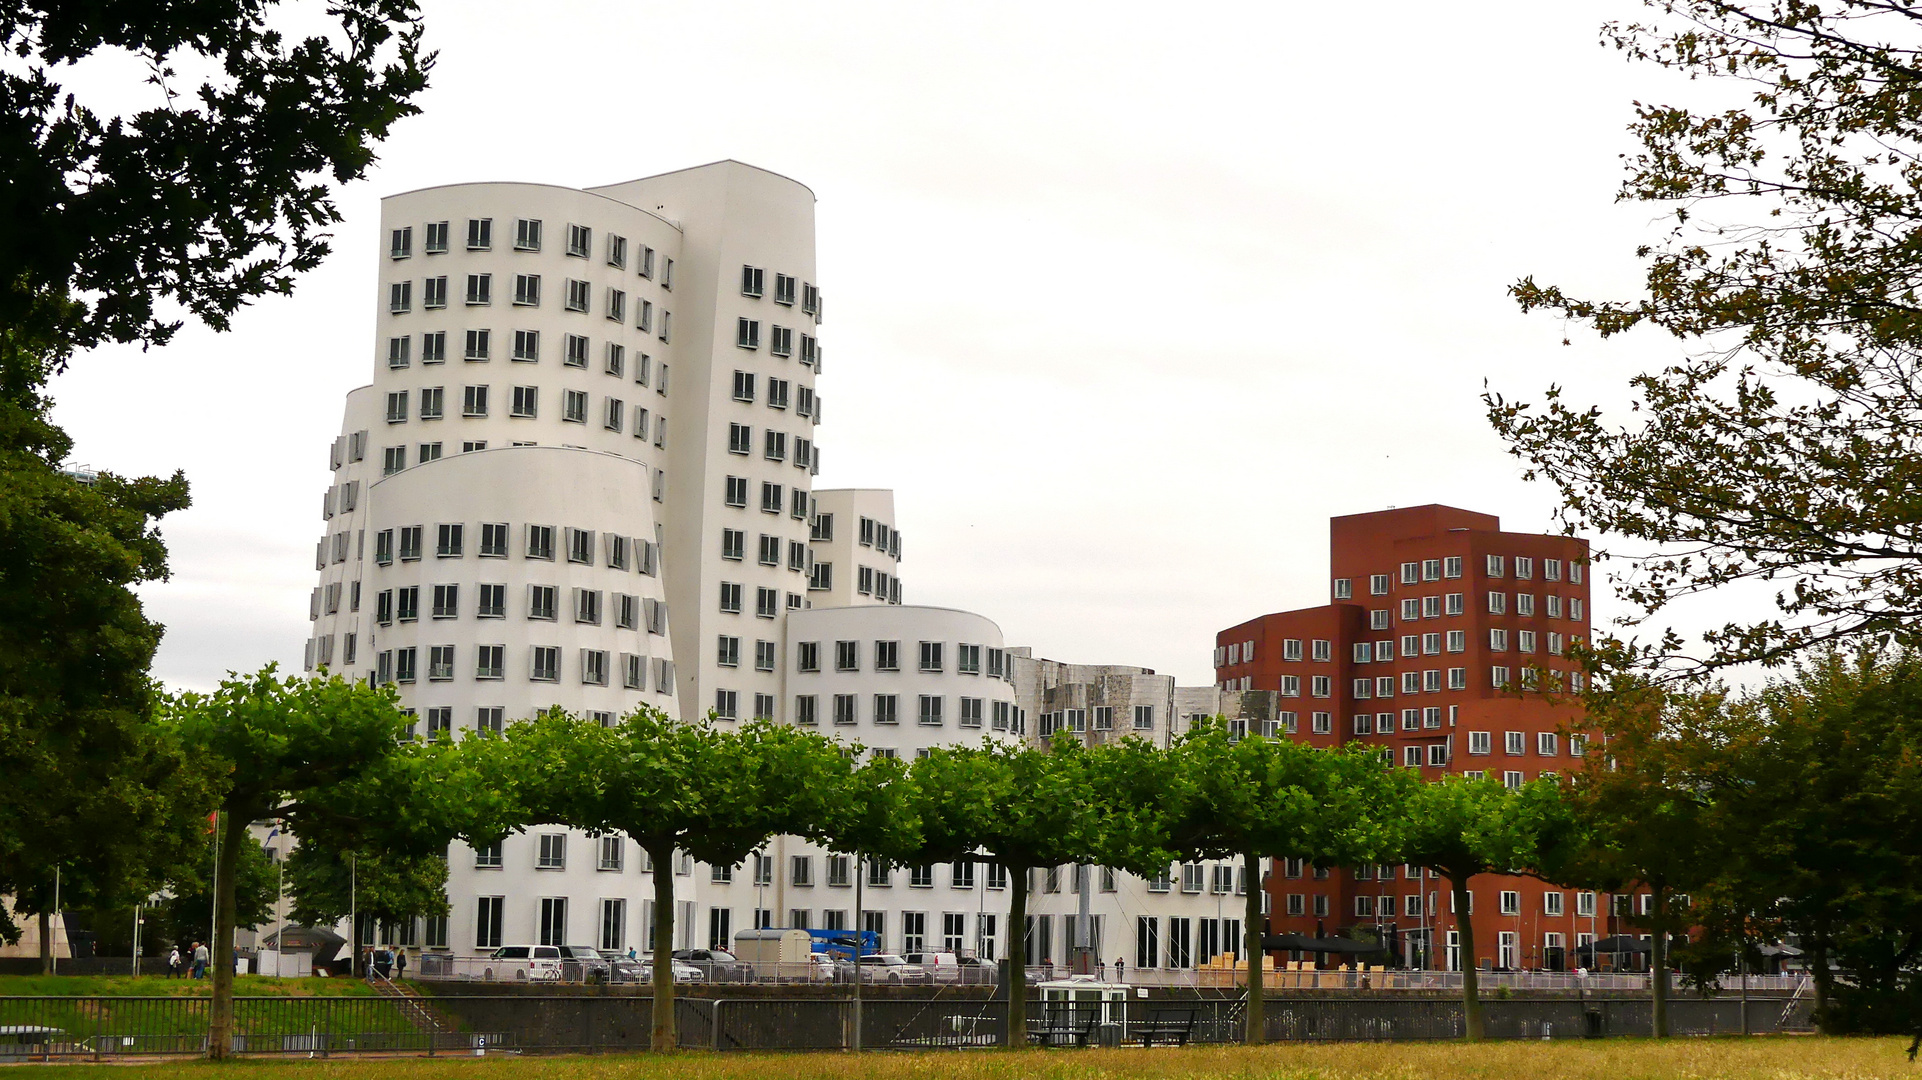 Gery-Häuser in Düsseldorf, ein beliebtes Motiv